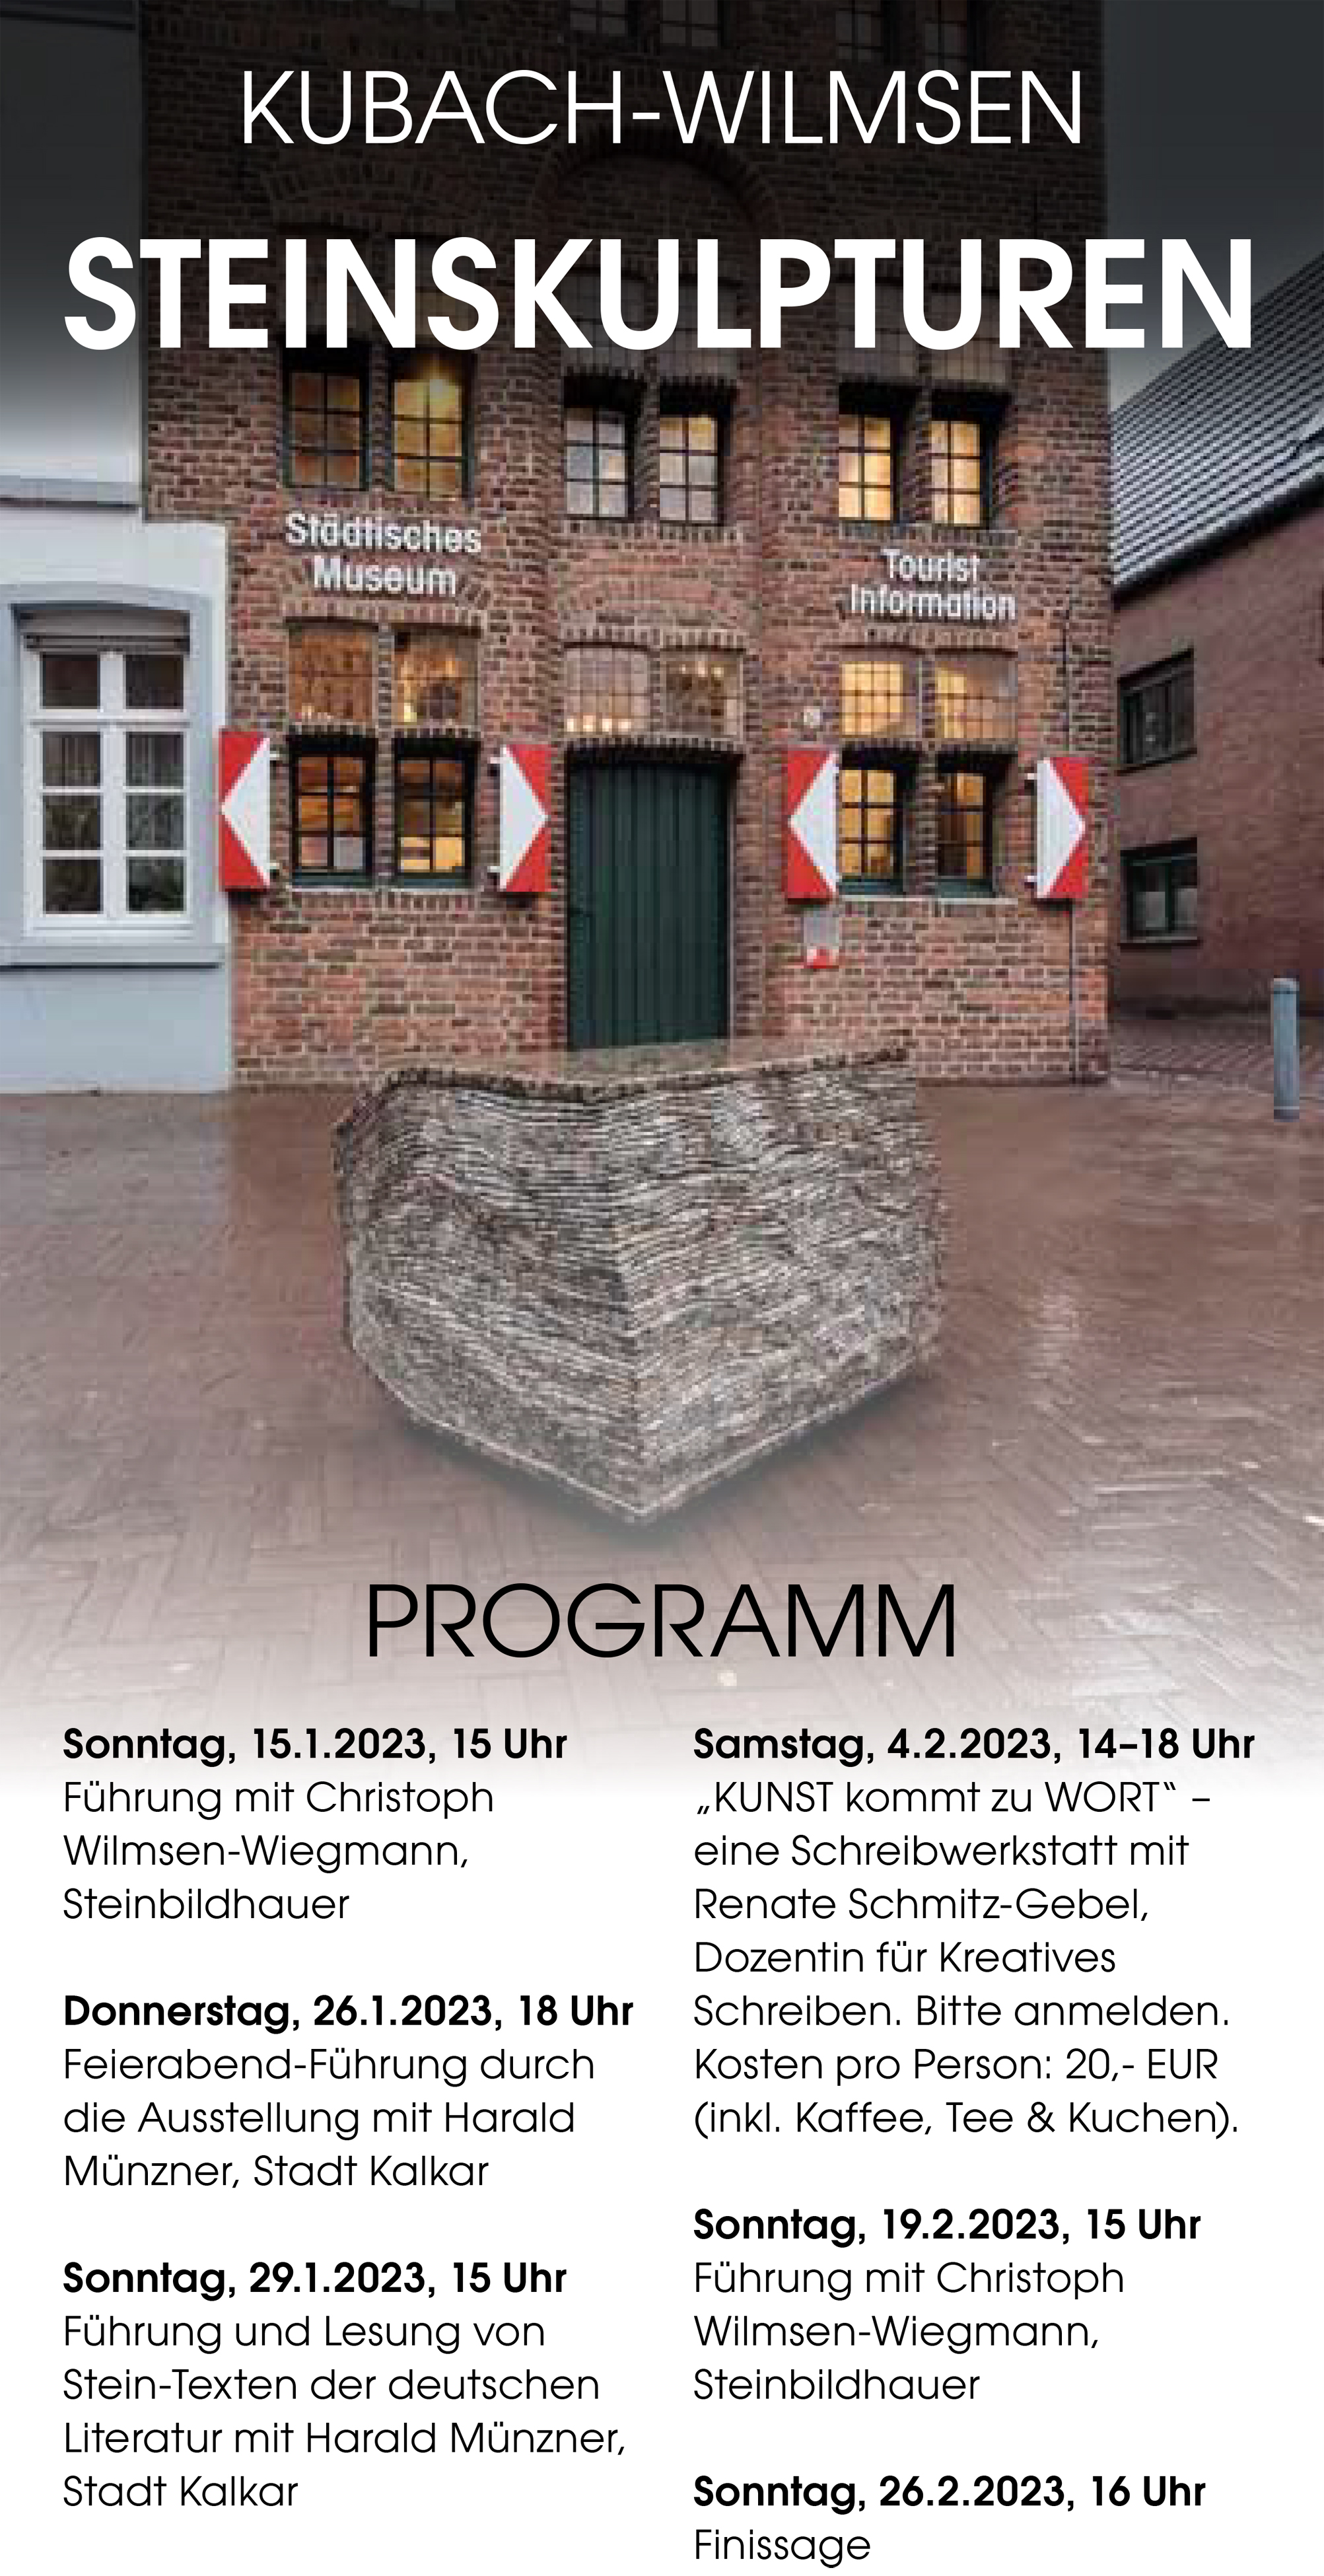 Programm zur Ausstellung Kubach-Wilmsen